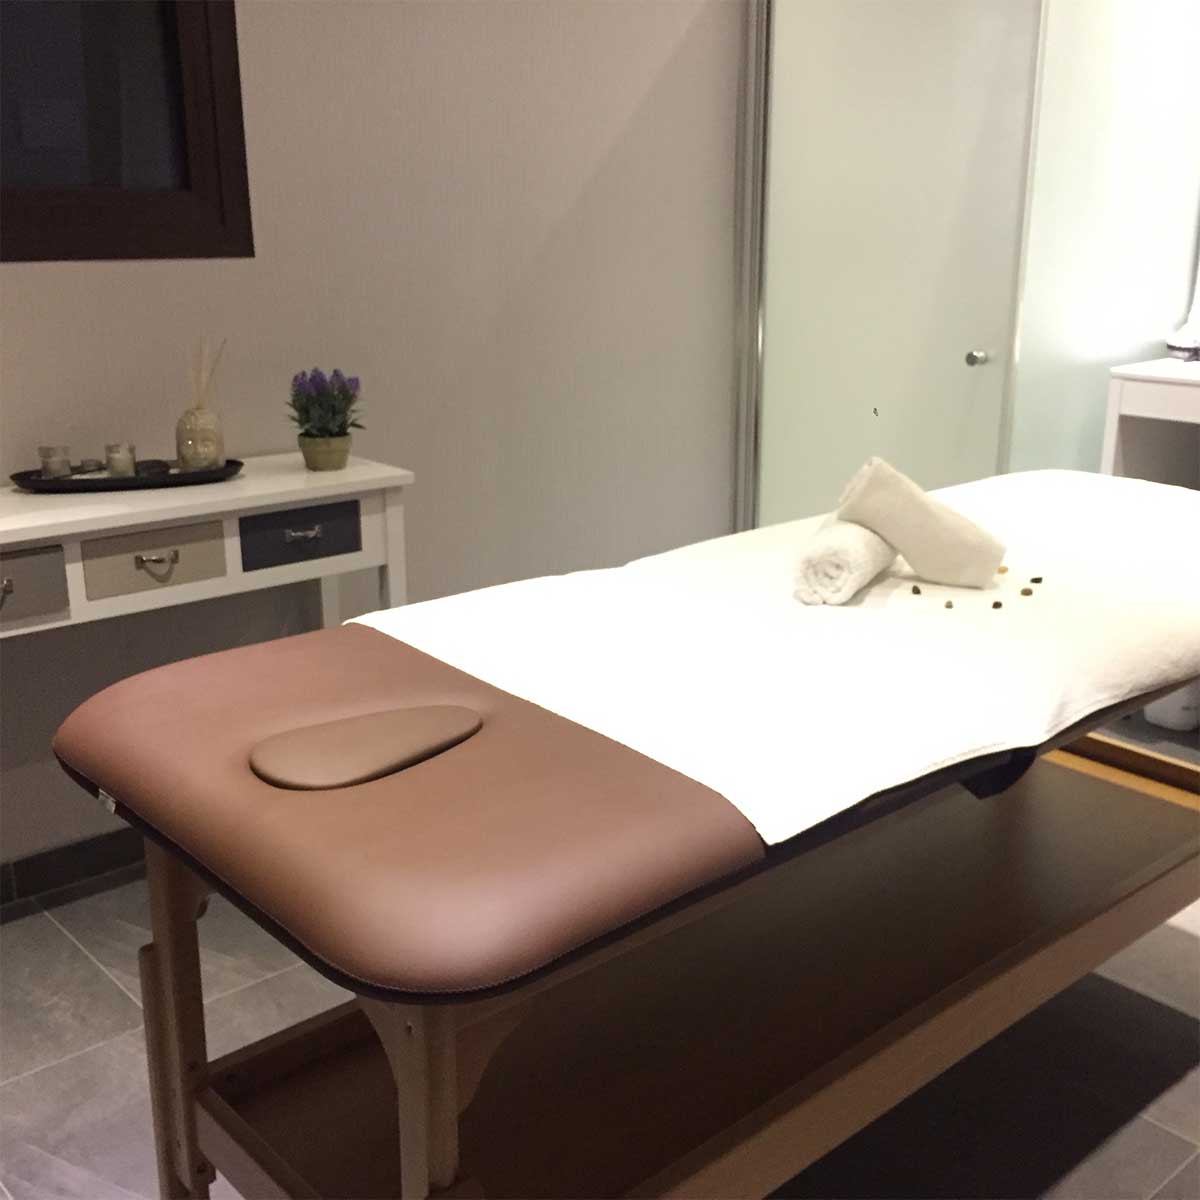 Servicios: En el Hotel Petit Palau disponemos de servicio de masajes